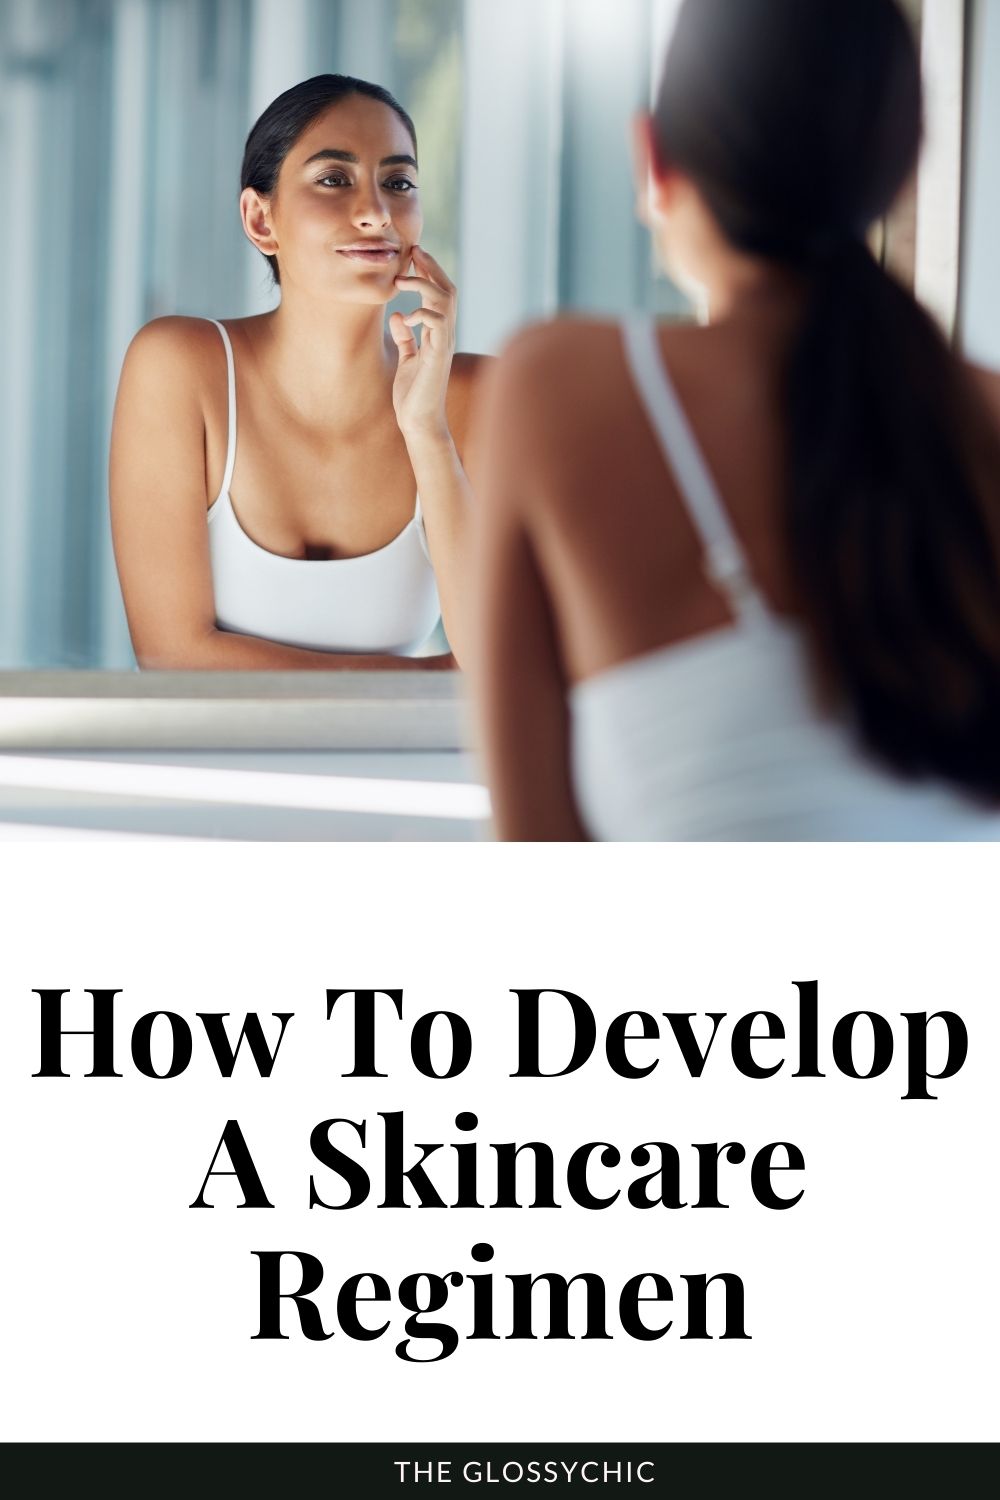 How to build a skincare regimen